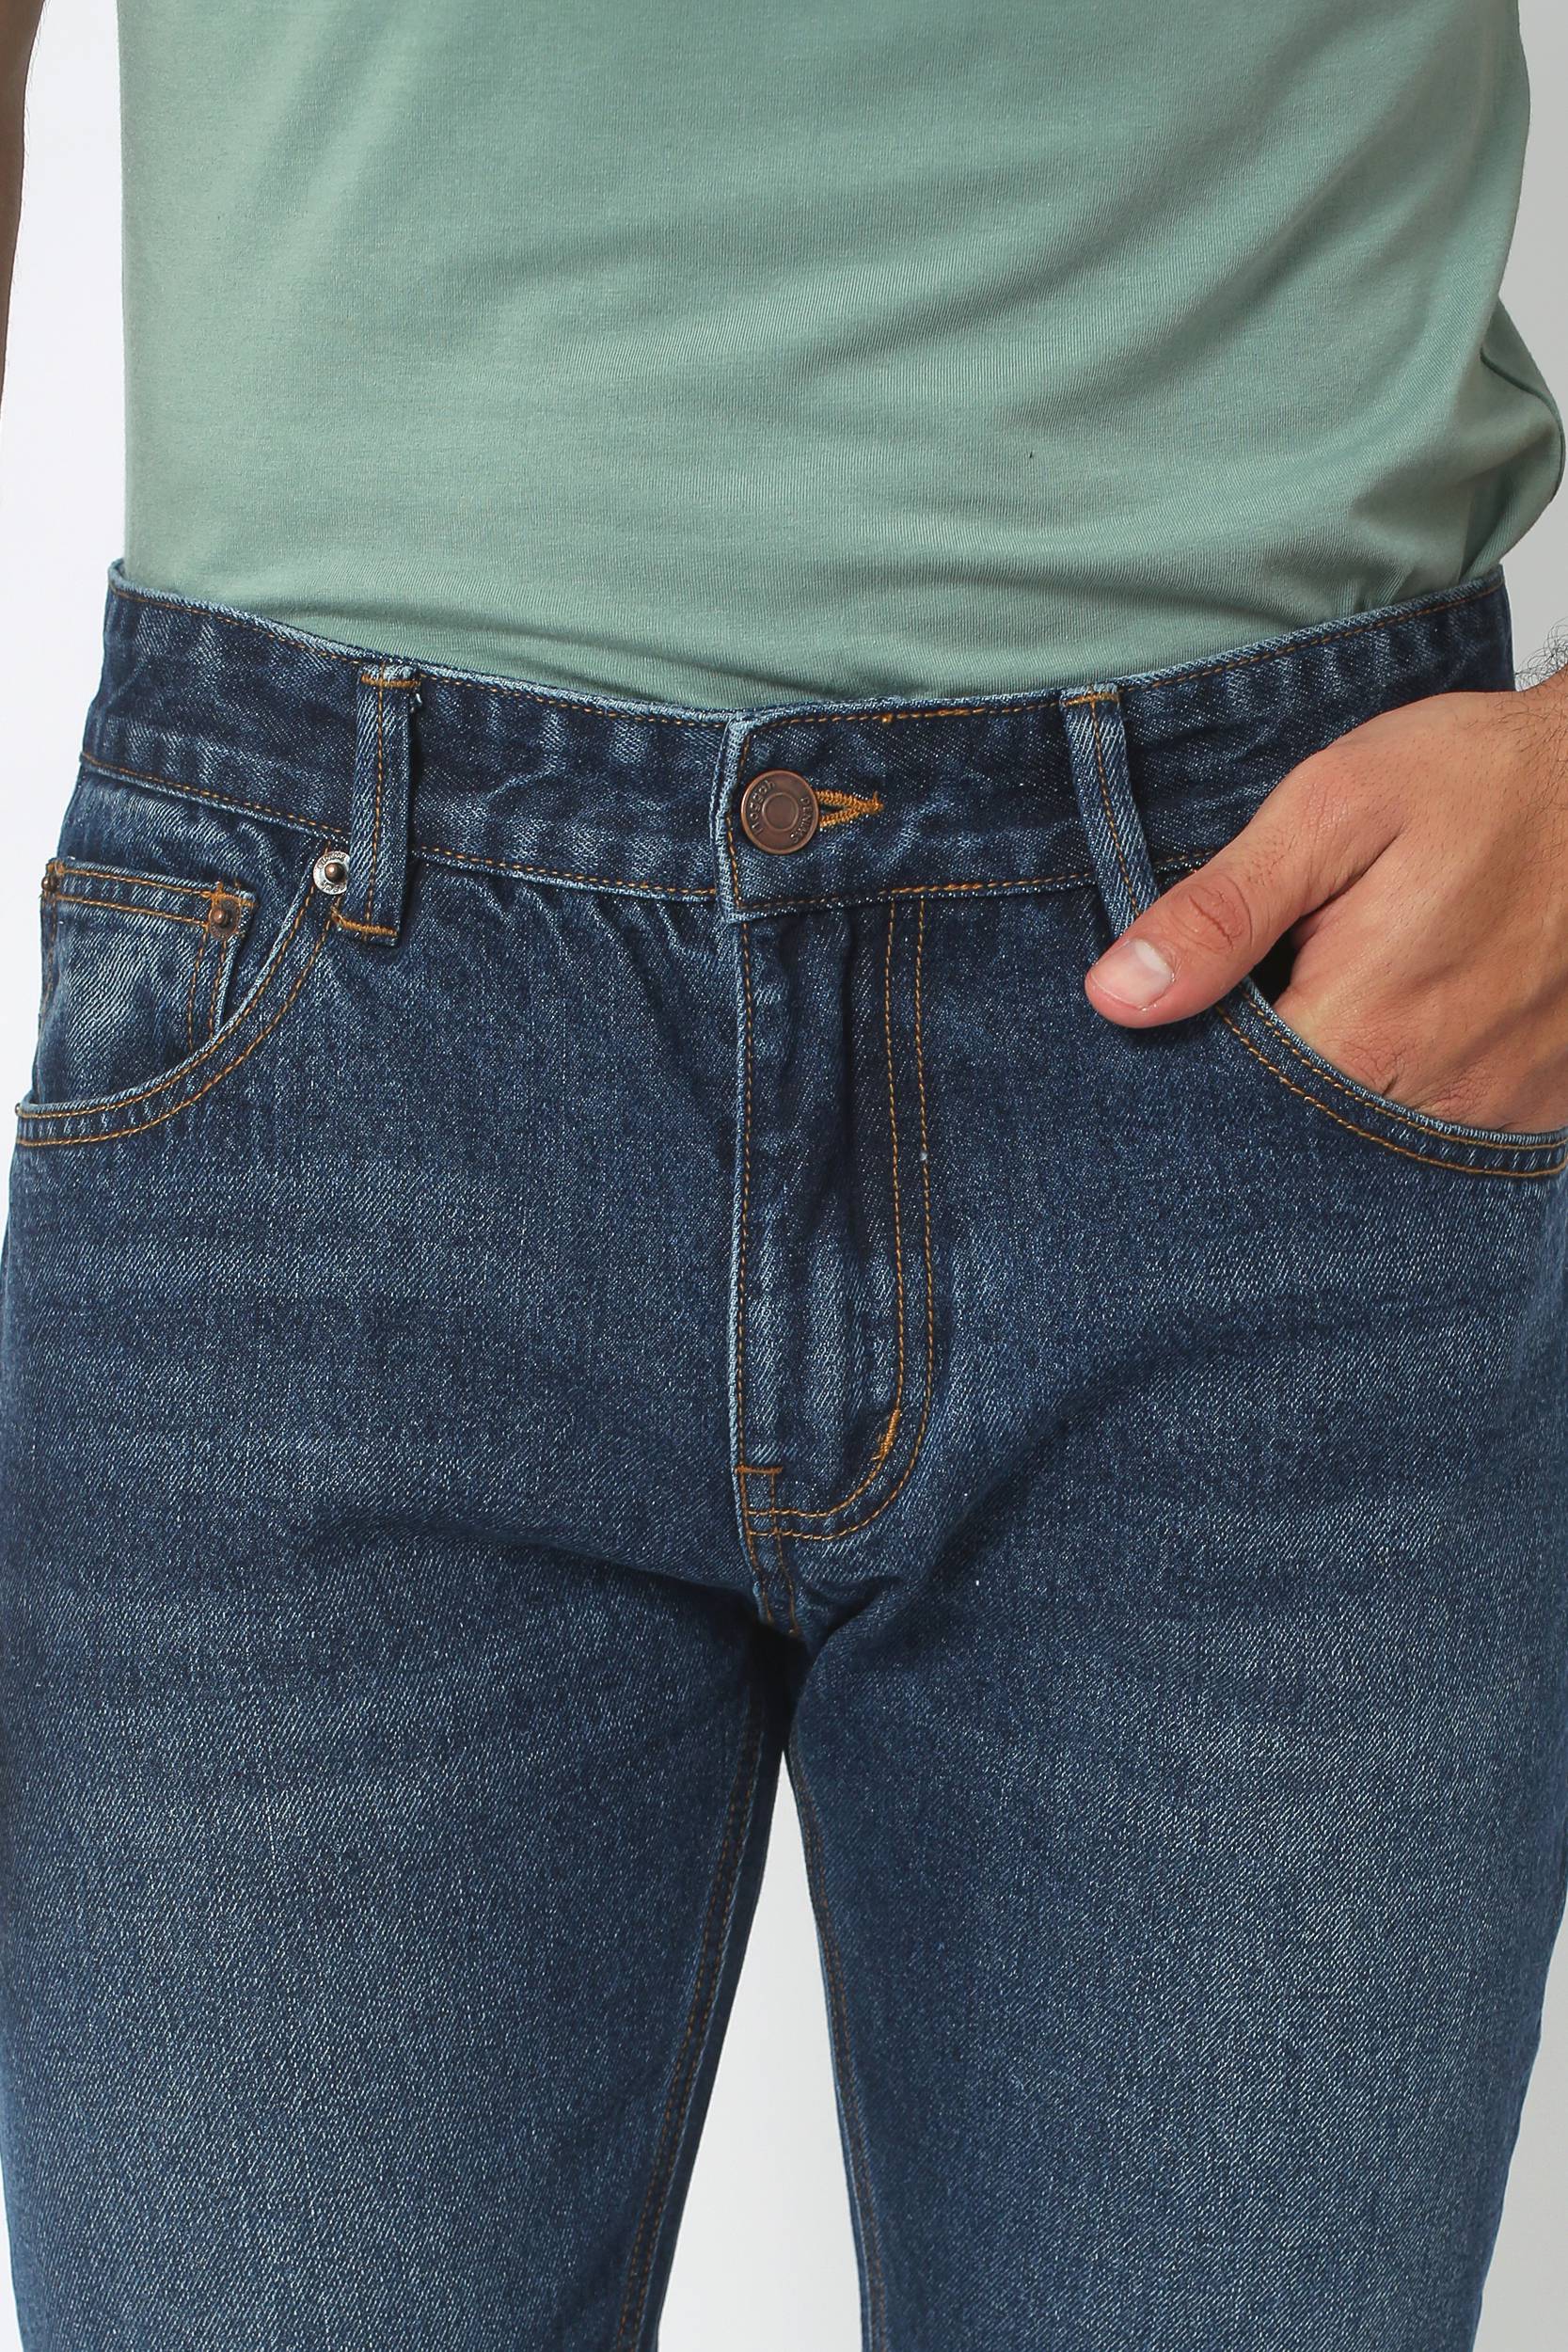 Boulder Denim 2.0 Men's Slim Fit Jeans Newmoon Blue - Long Inseam